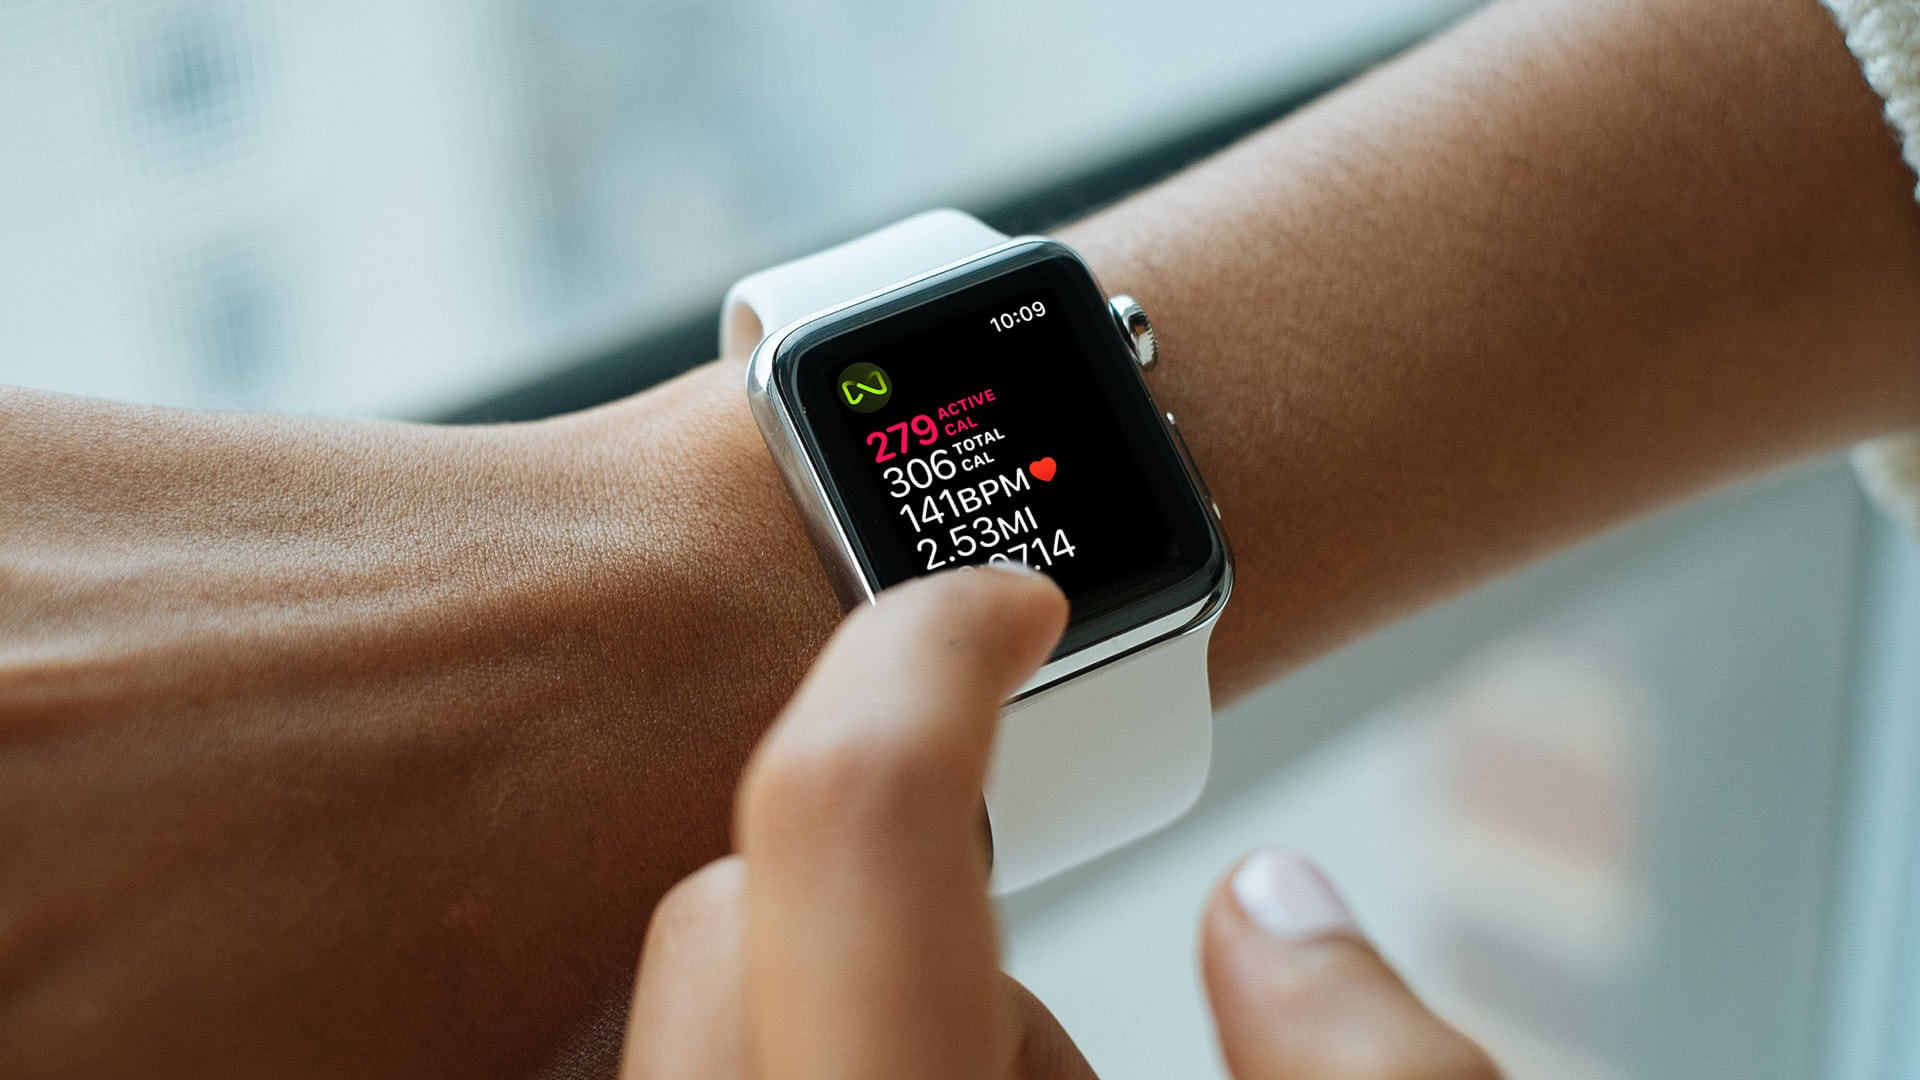 Як відстежувати калорії за допомогою Apple Watch